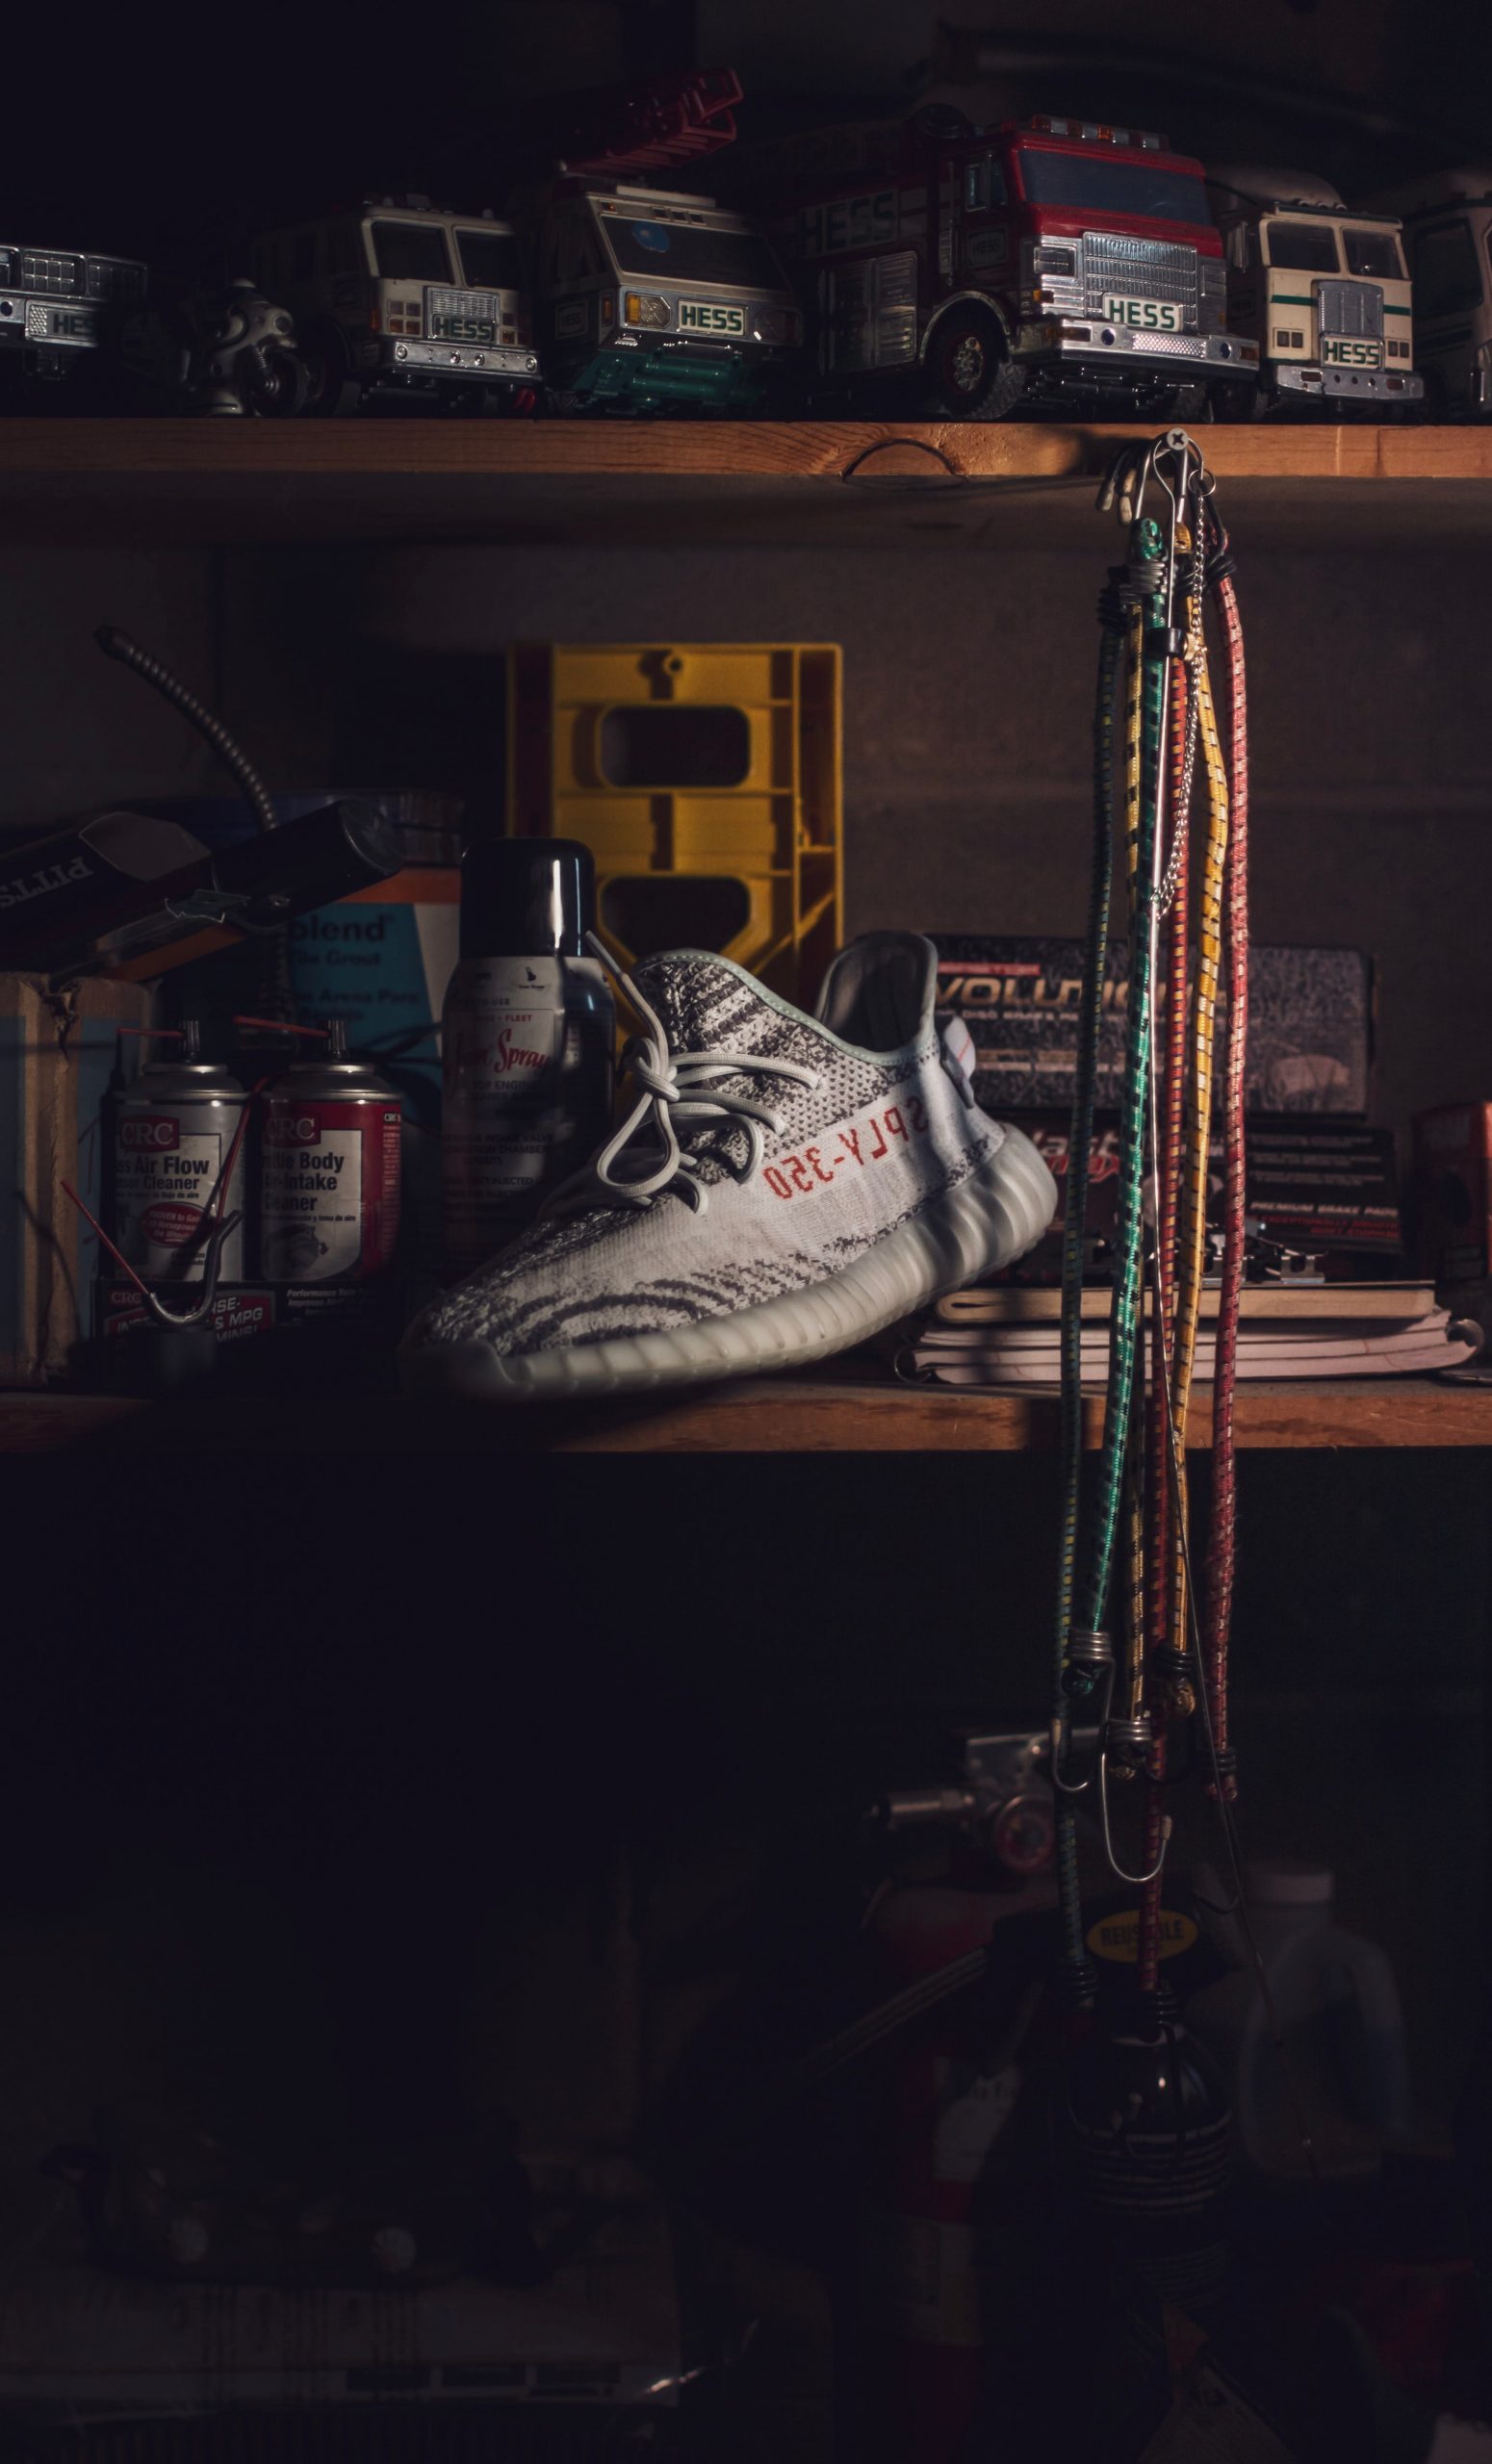 Unpaired Beluga Adidas Yeezy Boost 350 Shoe wallpaper, garage, indoors